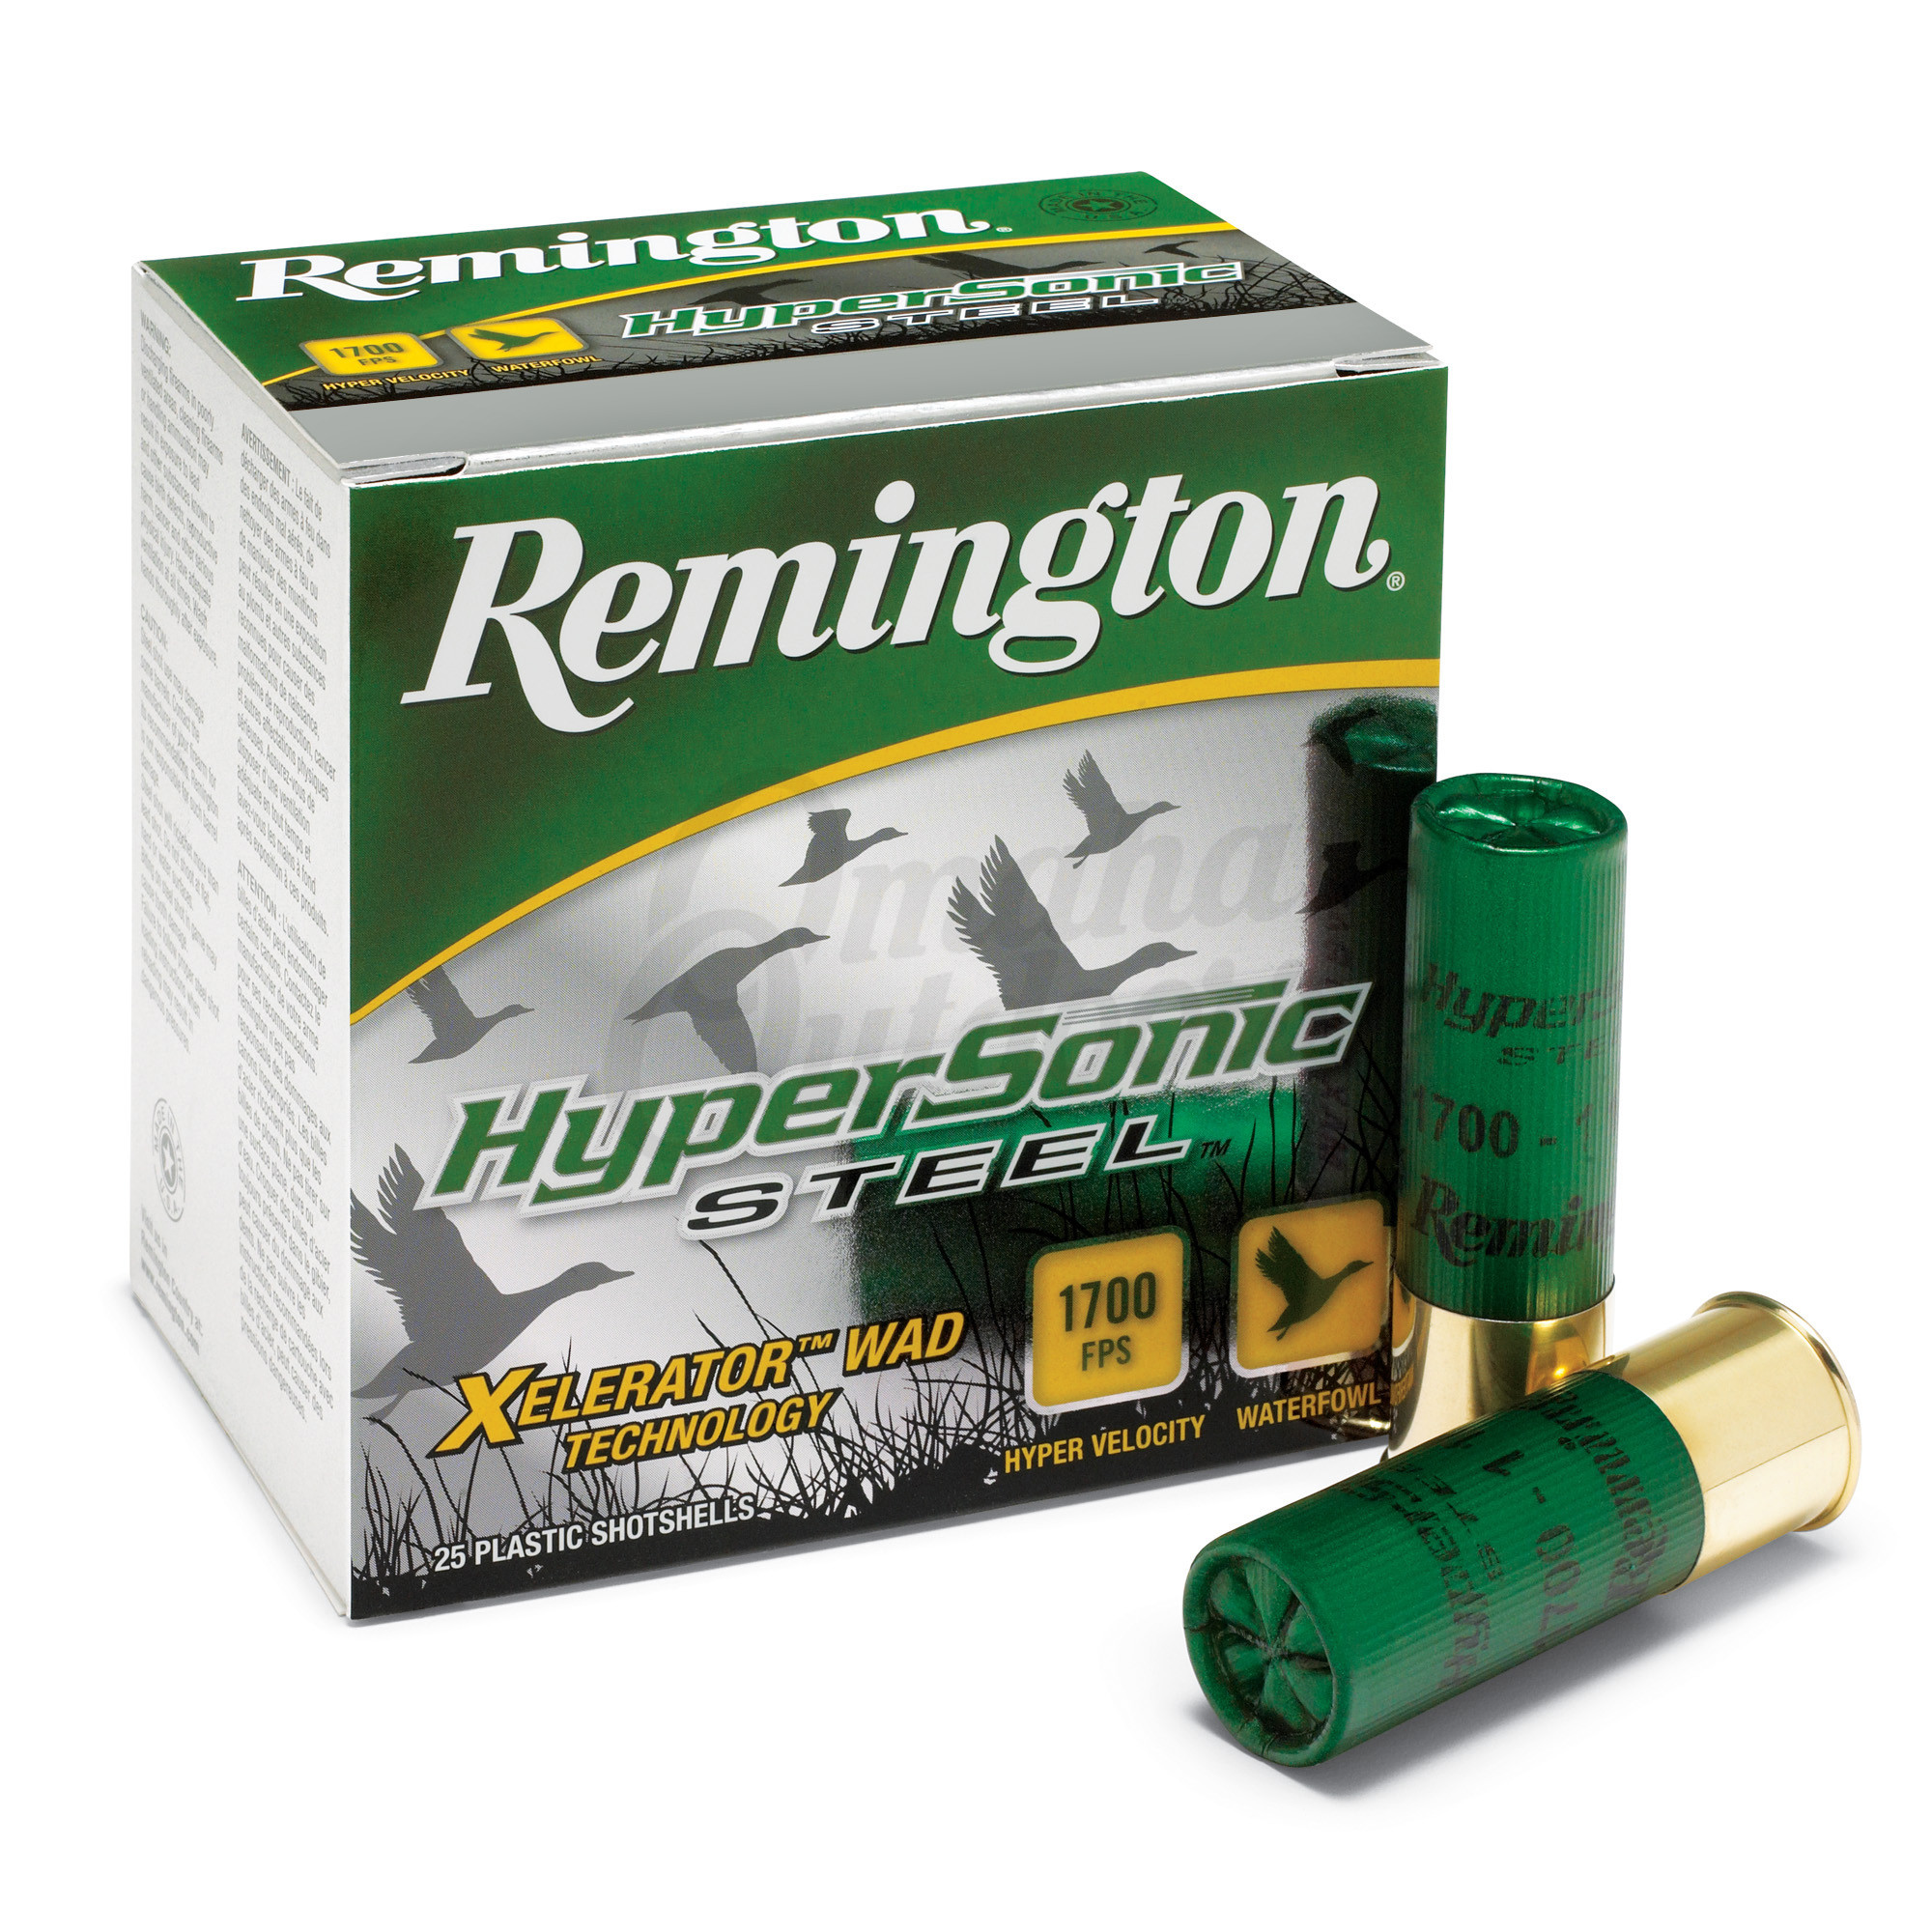 26799-remington-hypersonic-steel-ammo-12-gauge-3-5-4-shot-25-round